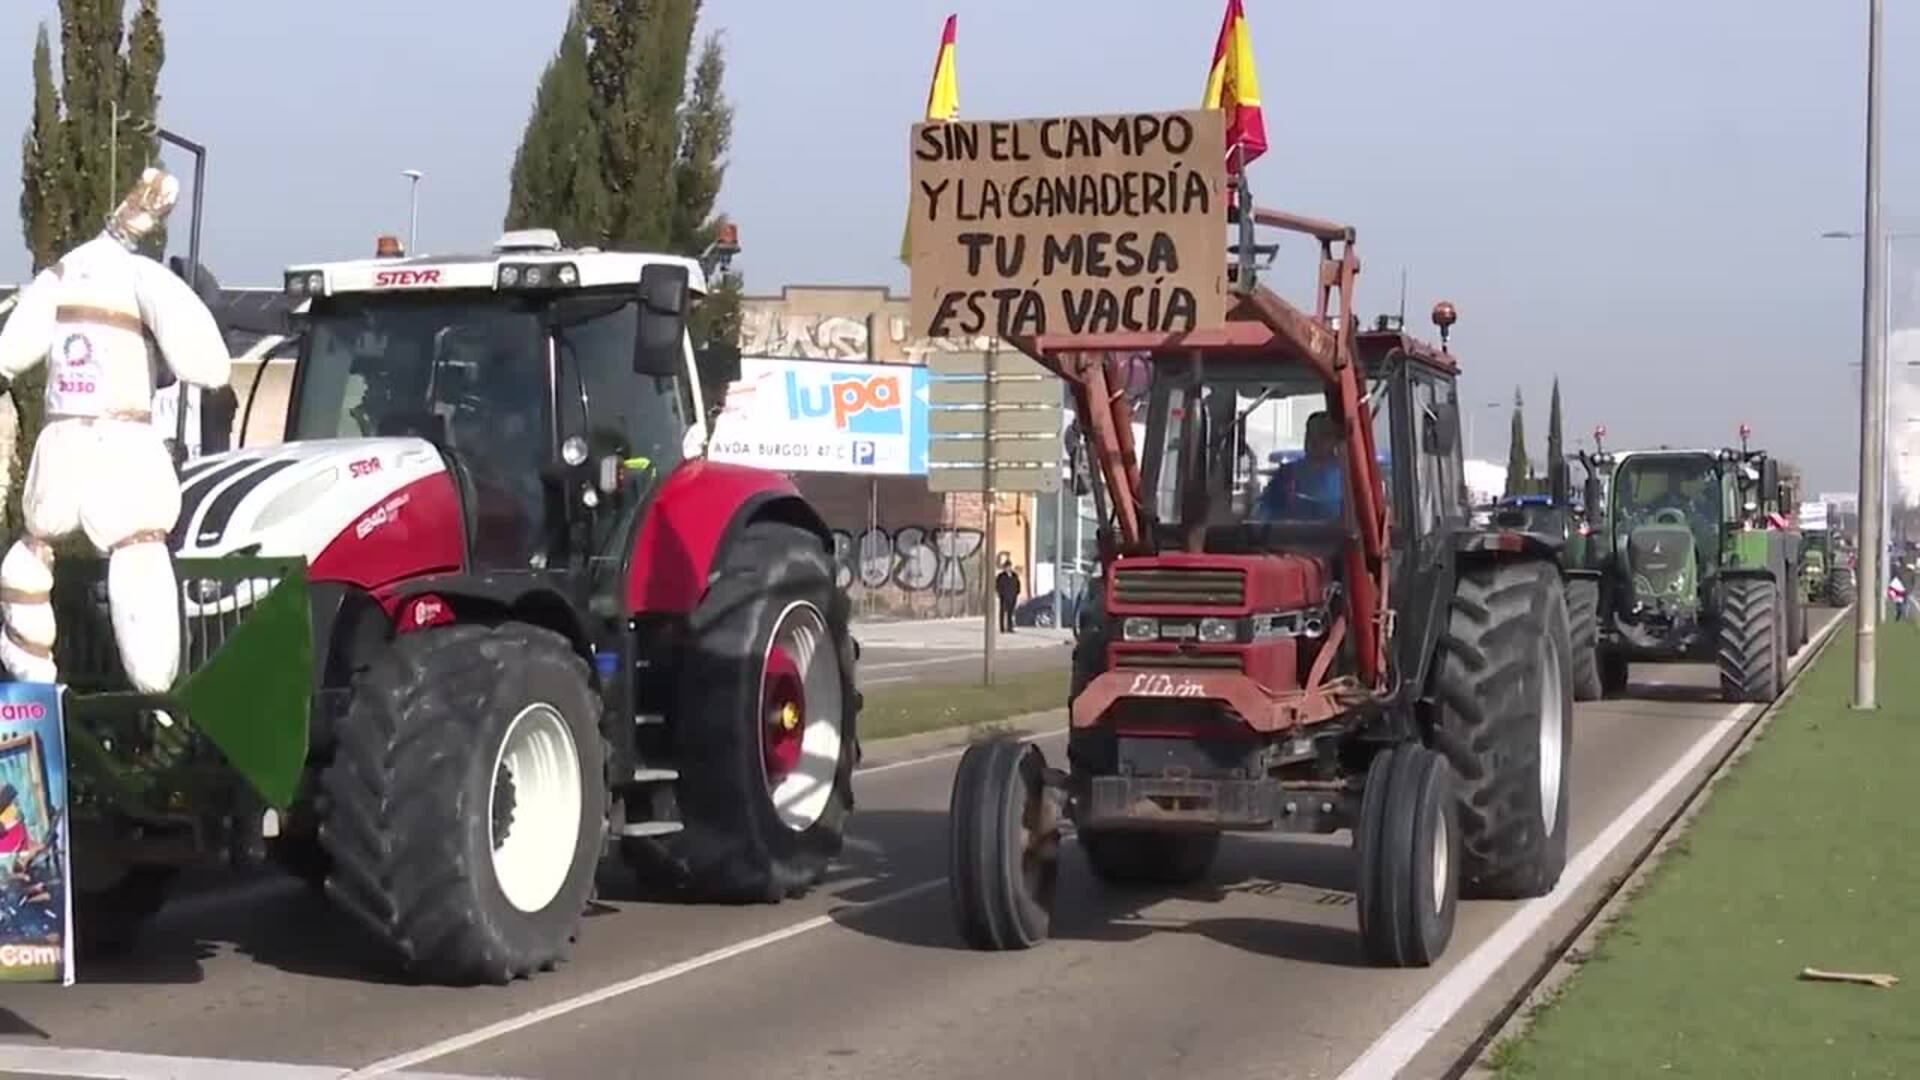 Decenas de tractores llevan a Valladolid la protesta contra la "asfixia" de la Agenda 2030